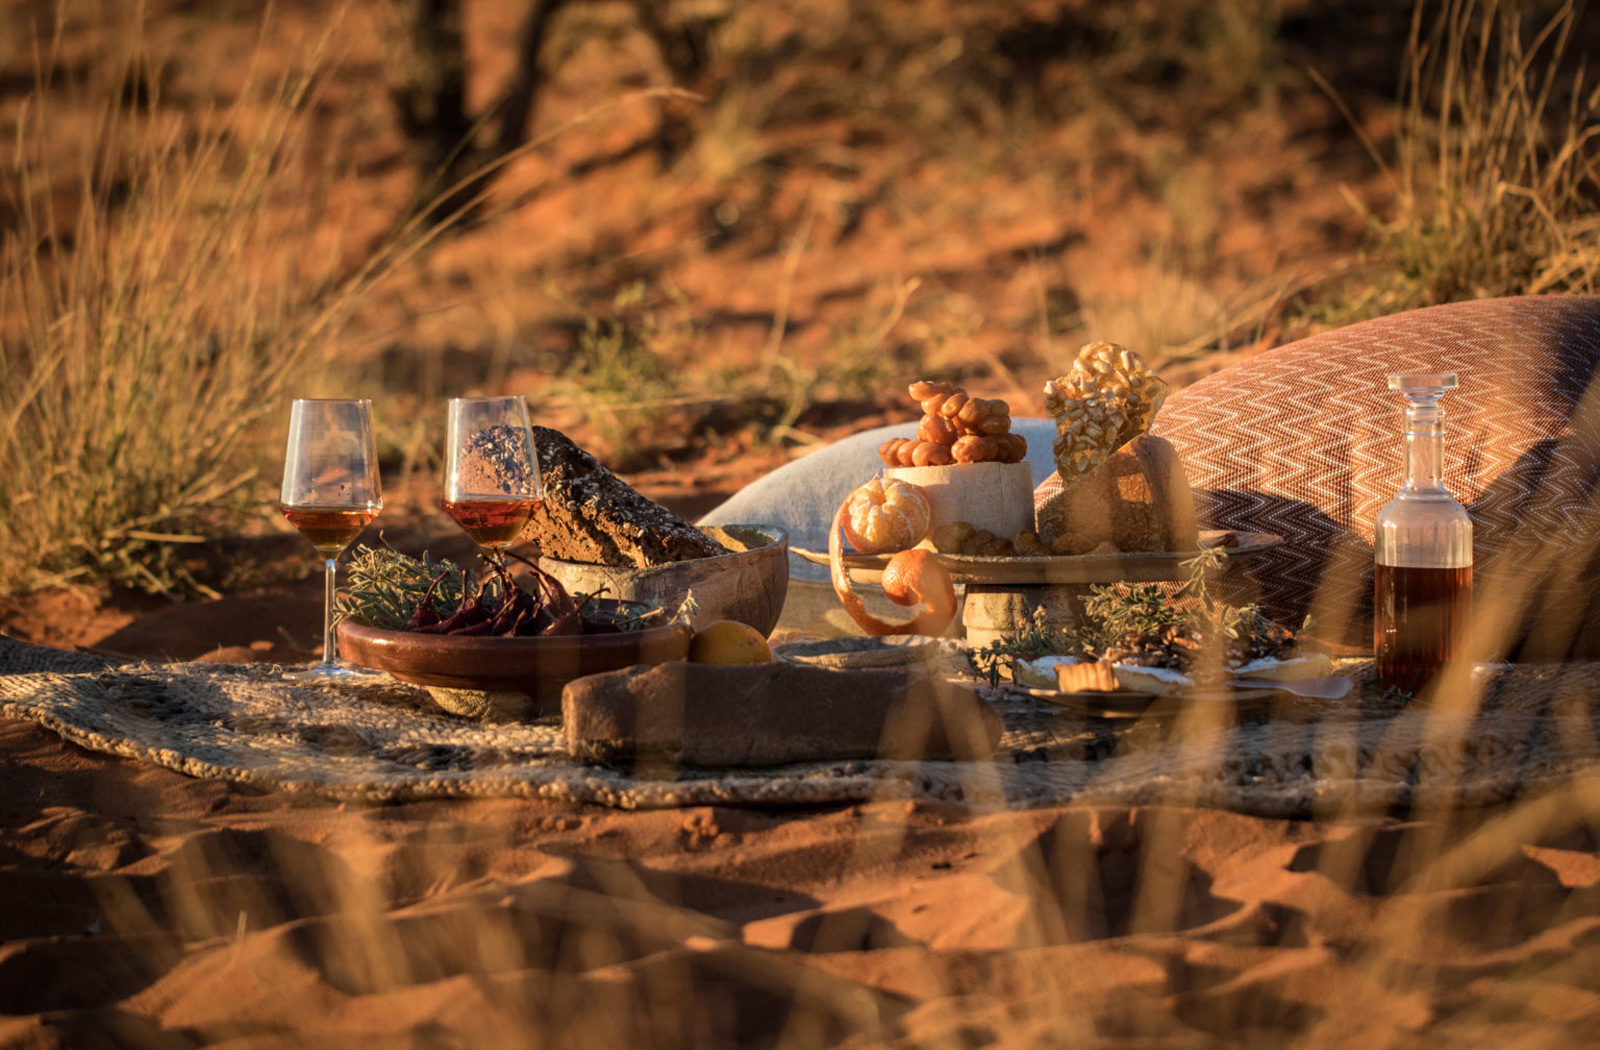 Dining on the dunes at Tswalu Kalahari